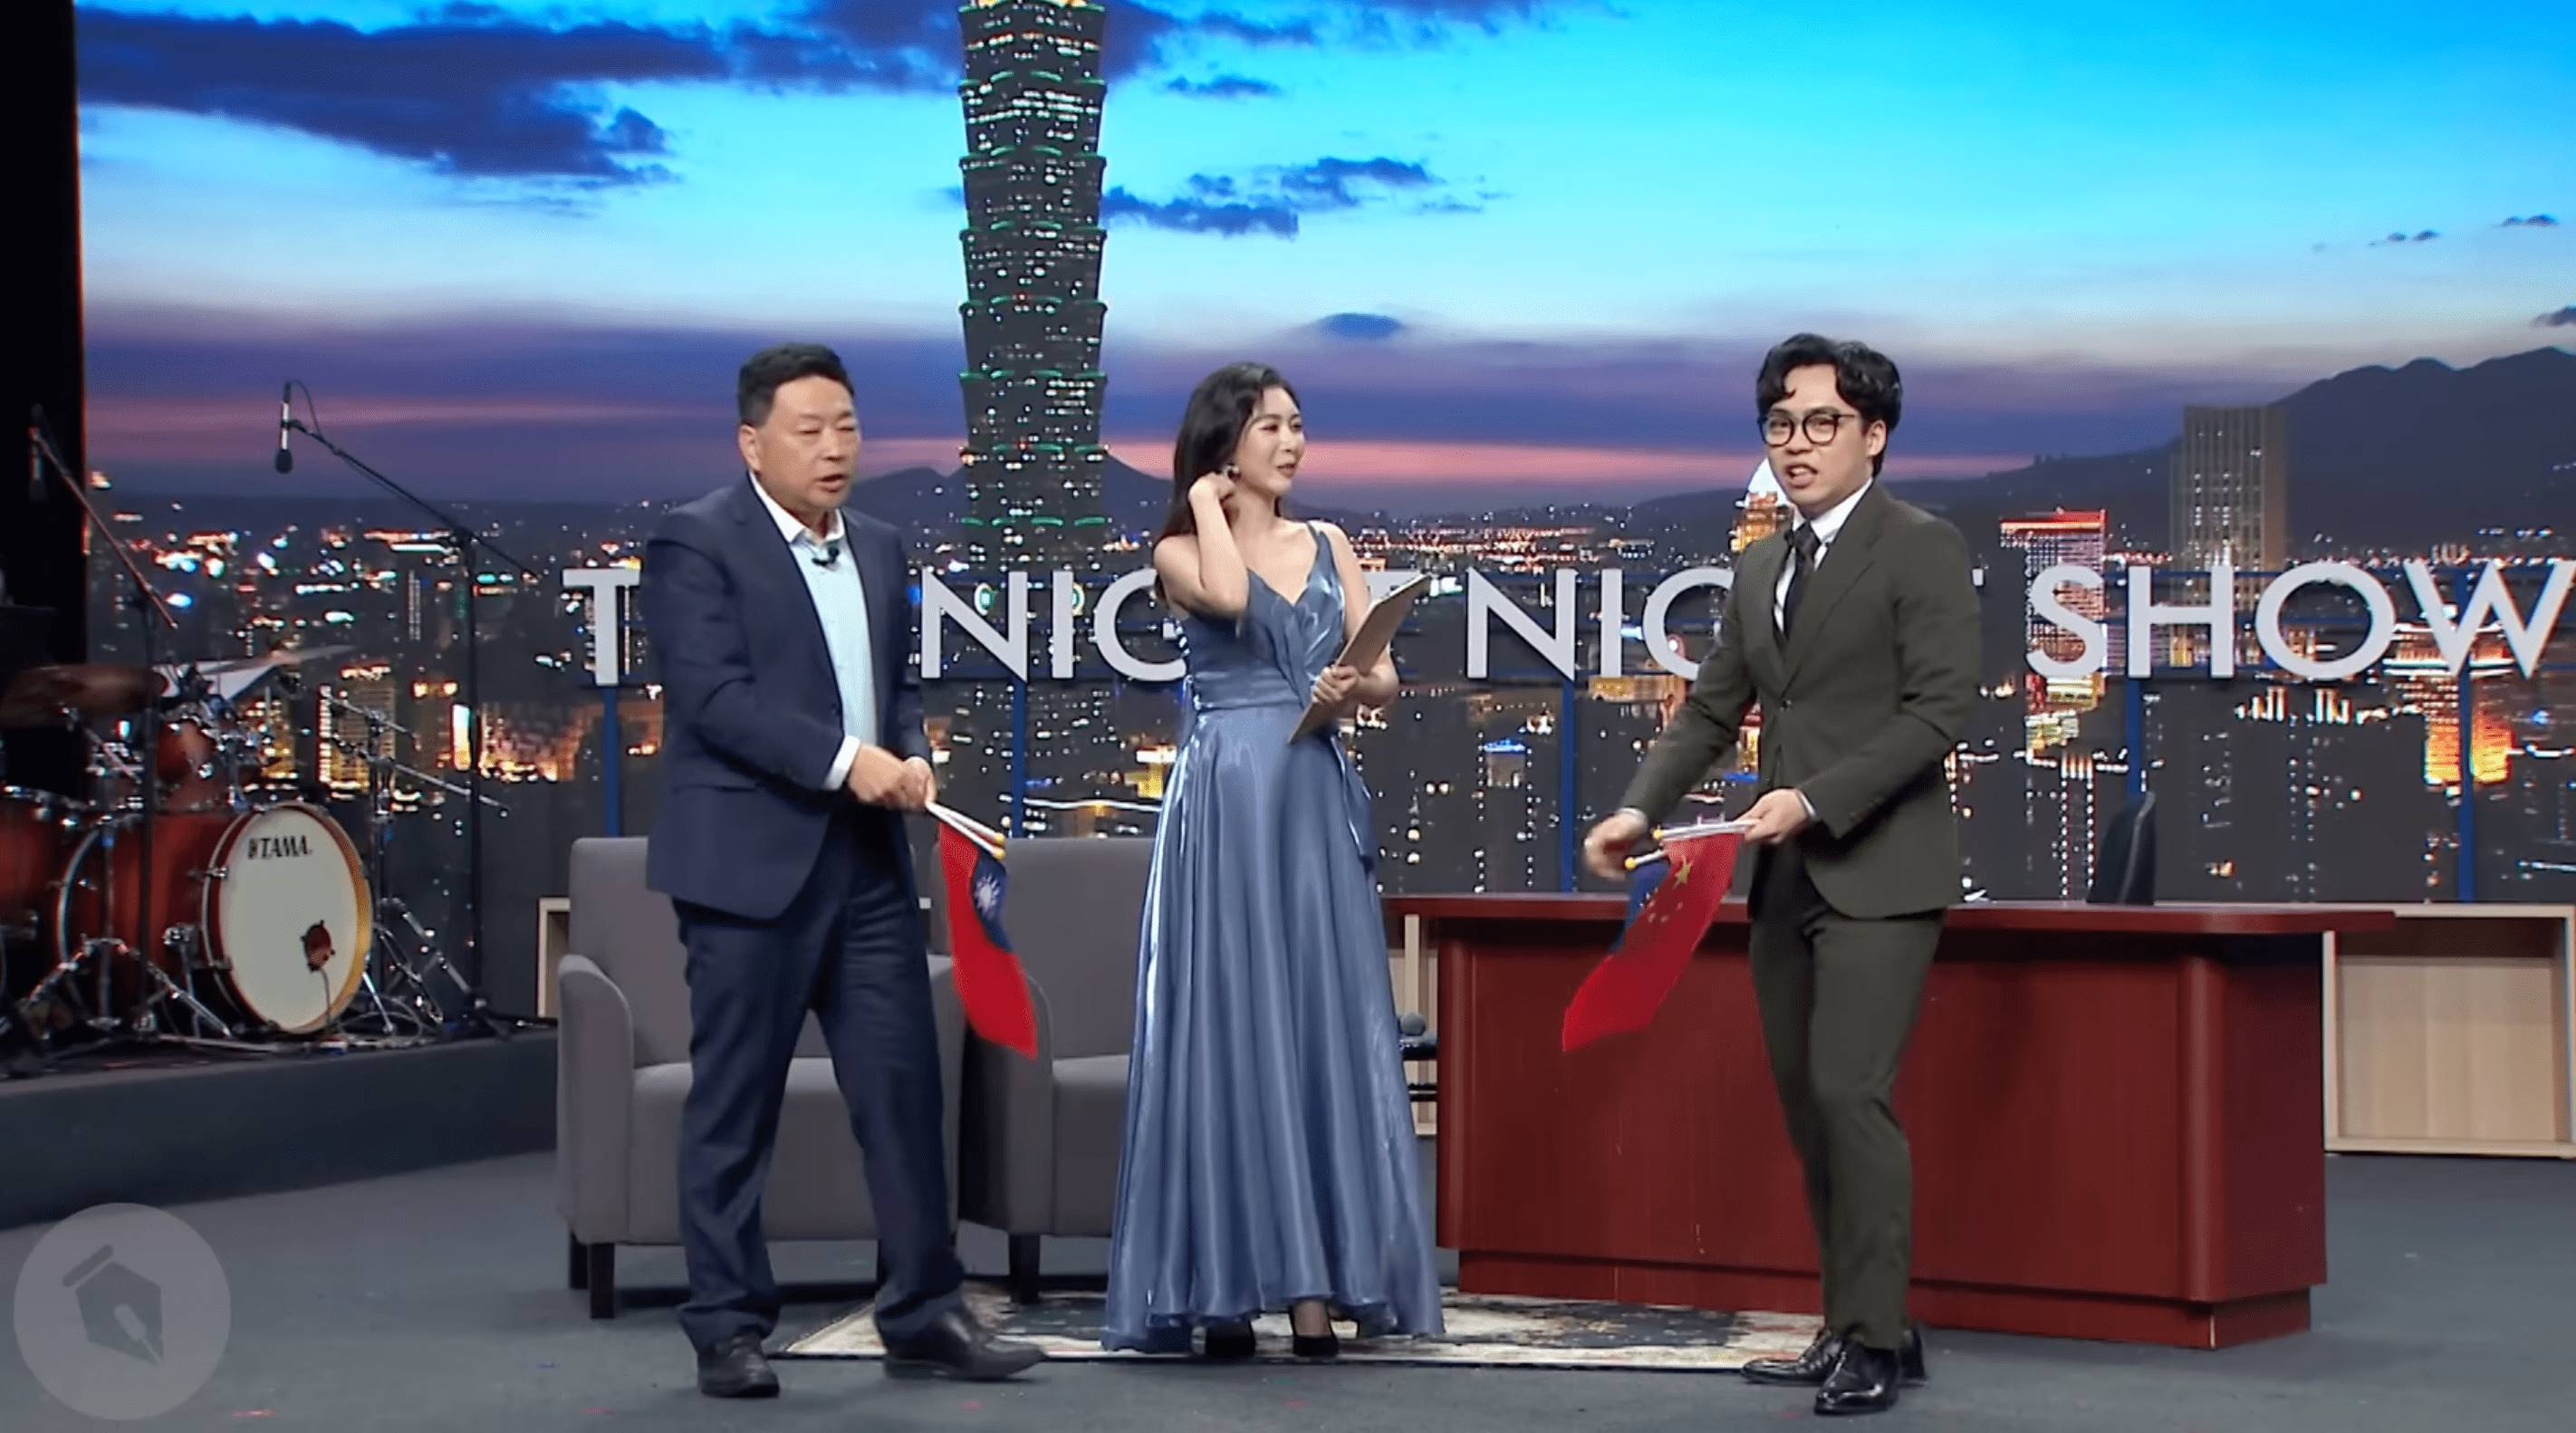 中國媒體人王志安在《賀瓏夜夜秀》歧視性發言、主持人賀瓏及助理主持人Albee發出笑聲引發網友熱議。